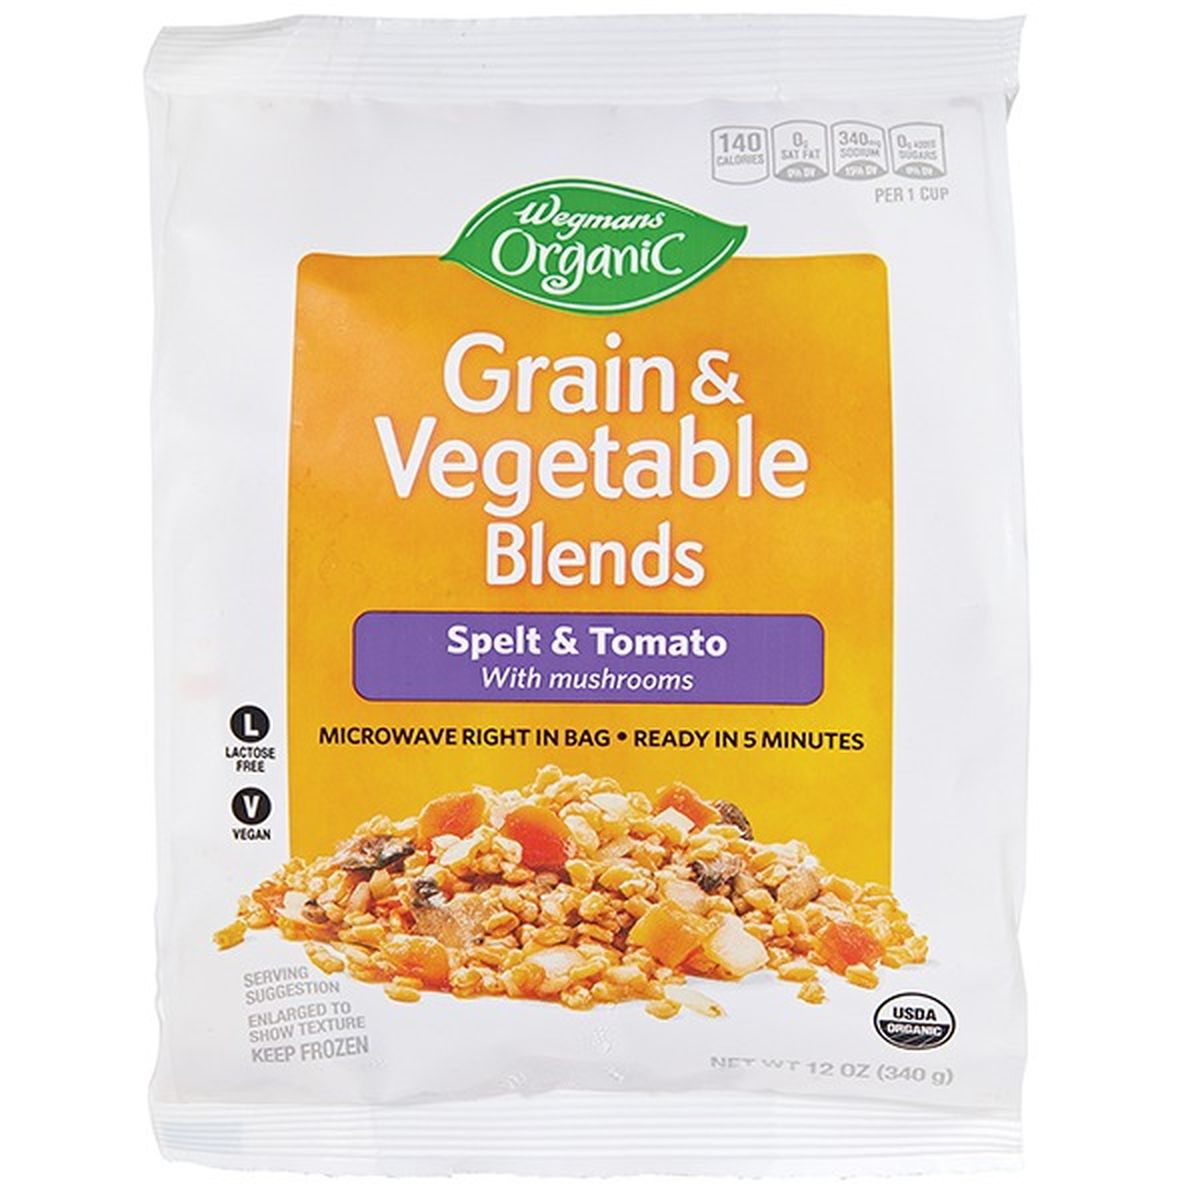 Calories in Wegmans Organic Grain & Vegetable Blends, Spelt & Tomato